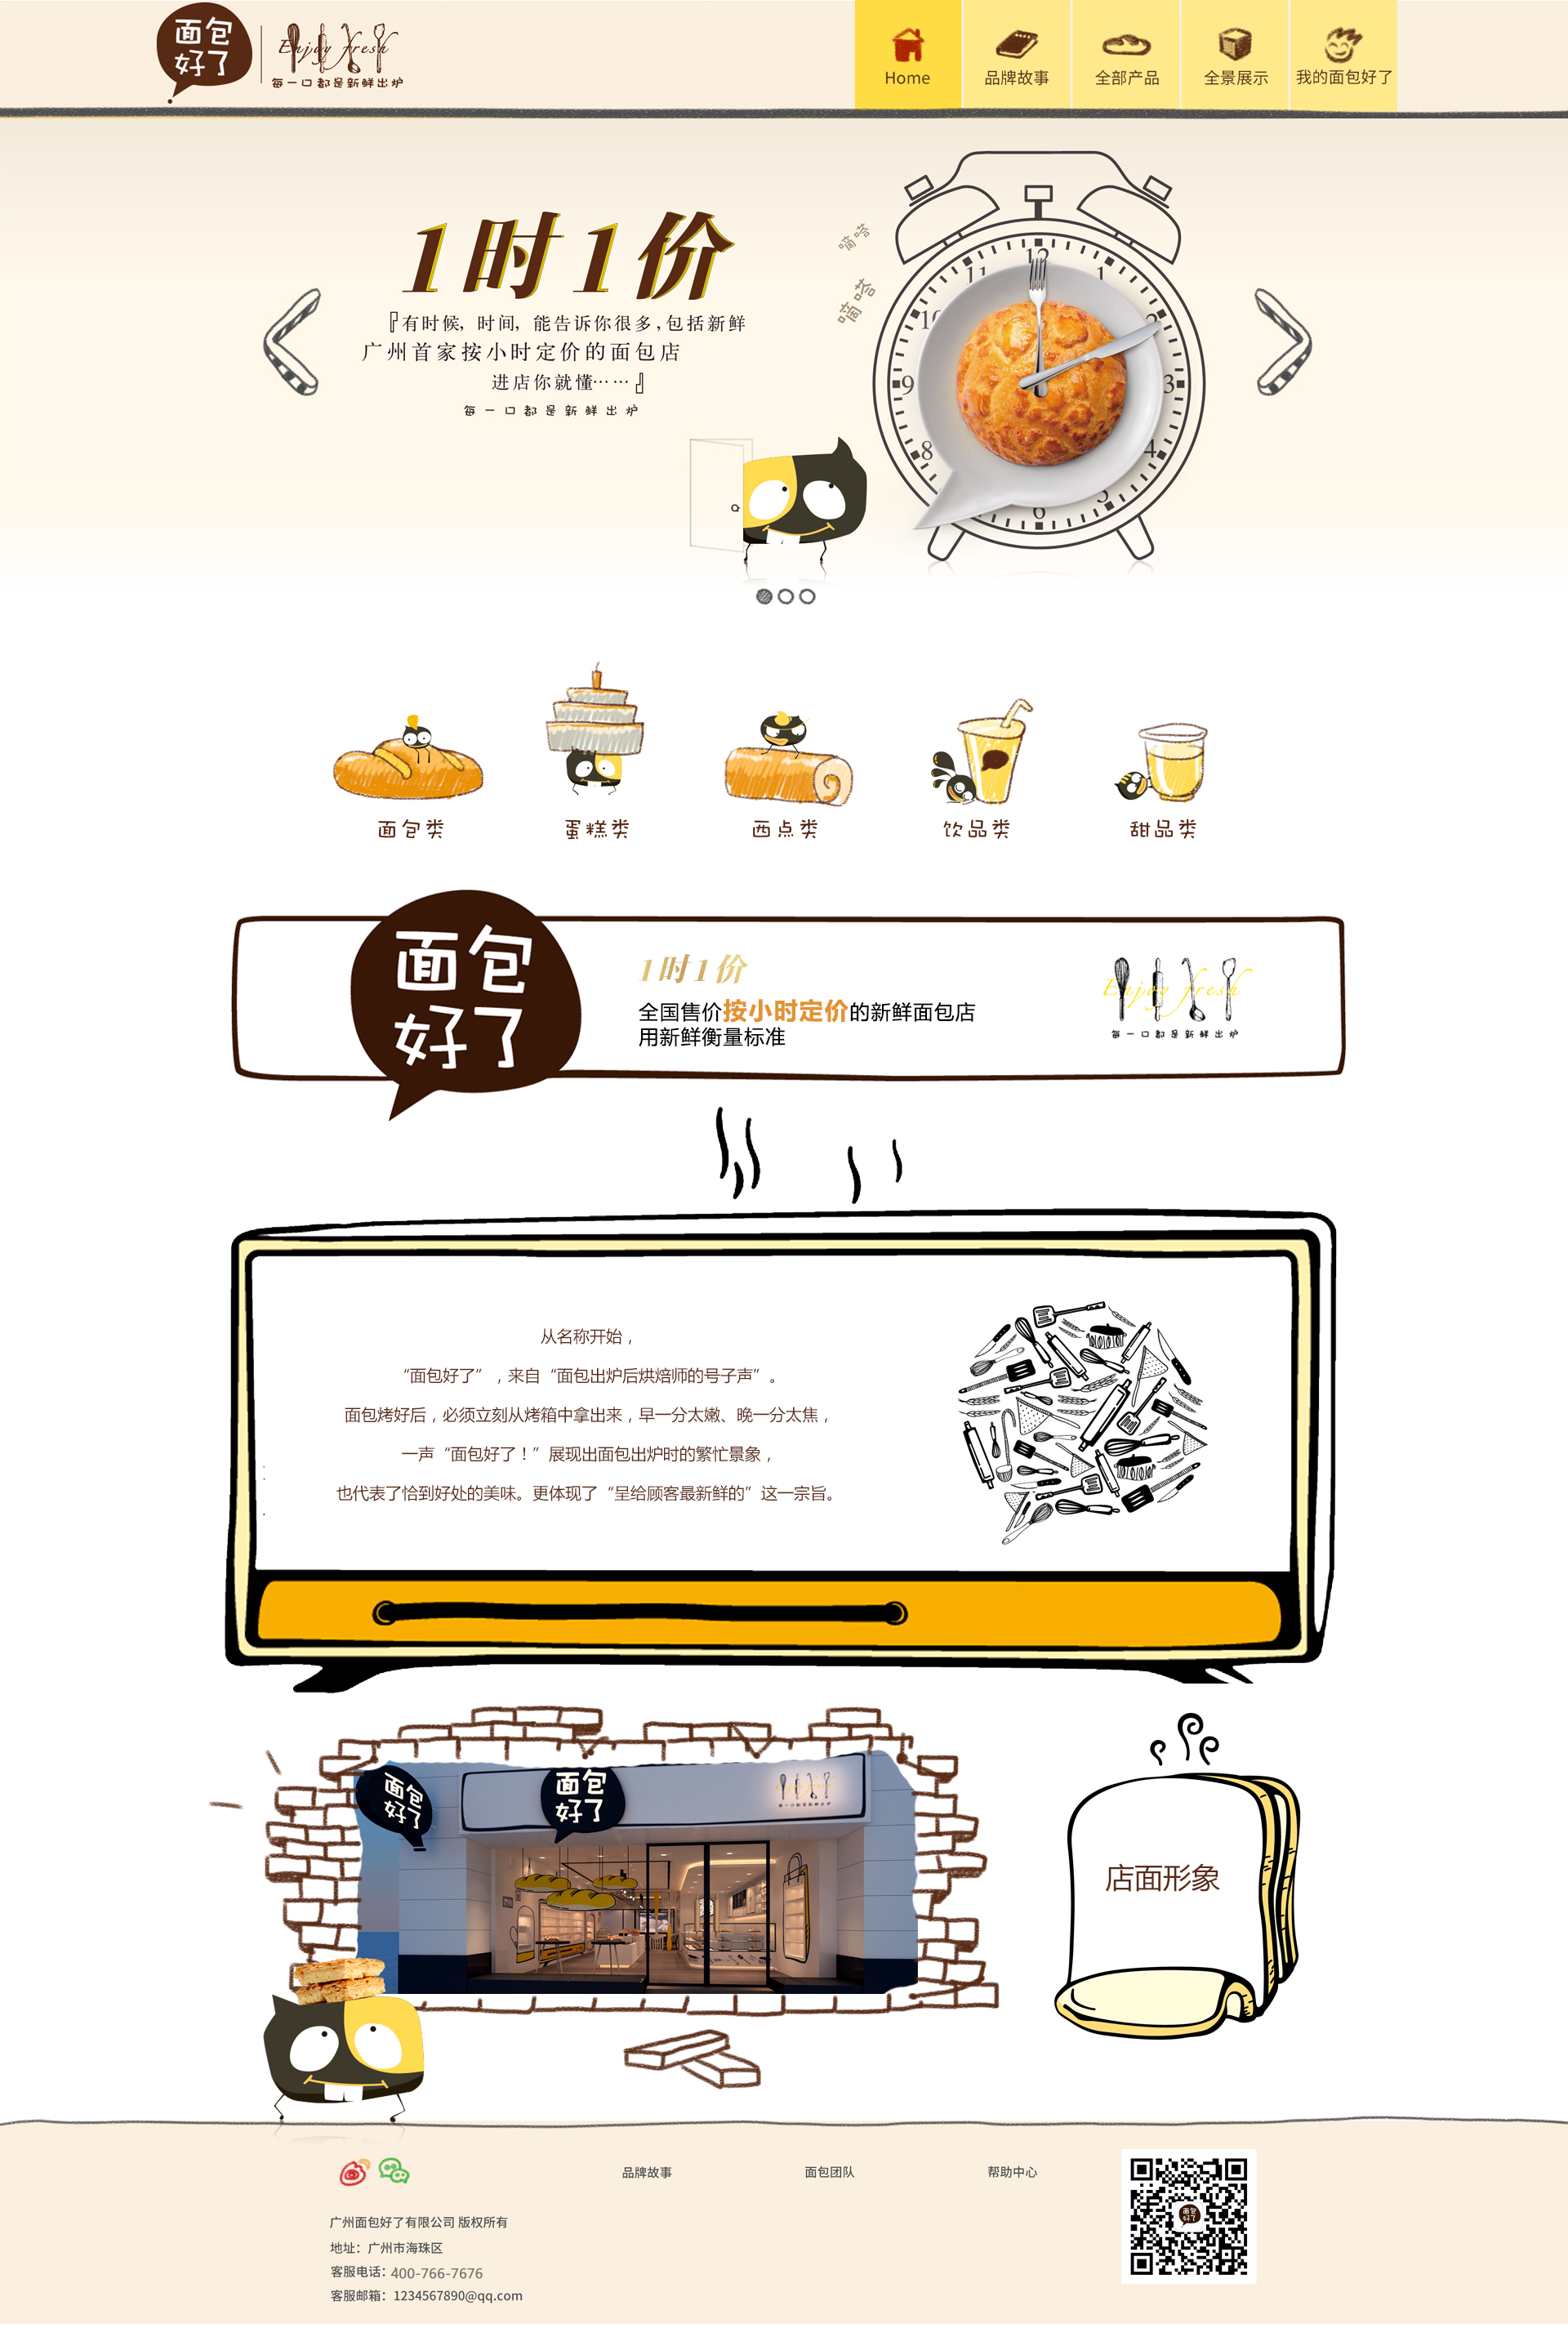 创意卡通风格的面包店网站设计模板